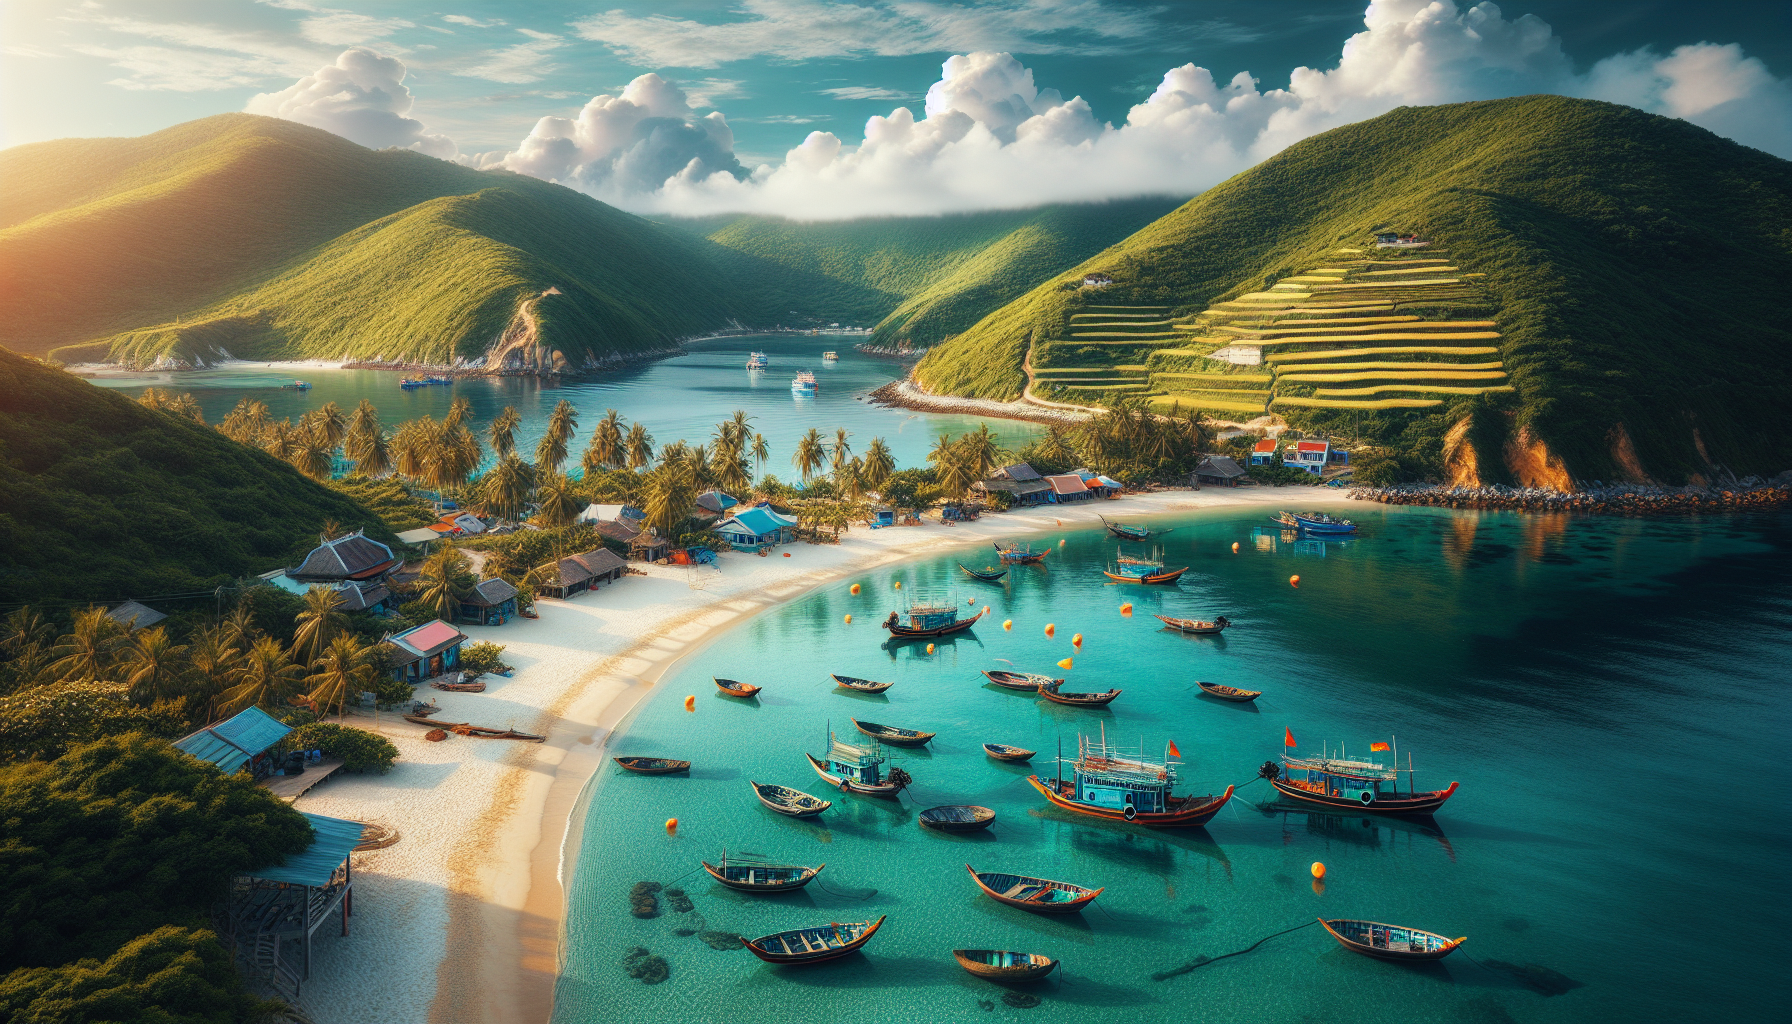 Đảo Cù Lao Chàm là một điểm du lịch nổi tiếng tại Việt Nam, thu hút khách du lịch bởi vẻ đẹp hoang sơ và hấp dẫn của nó.